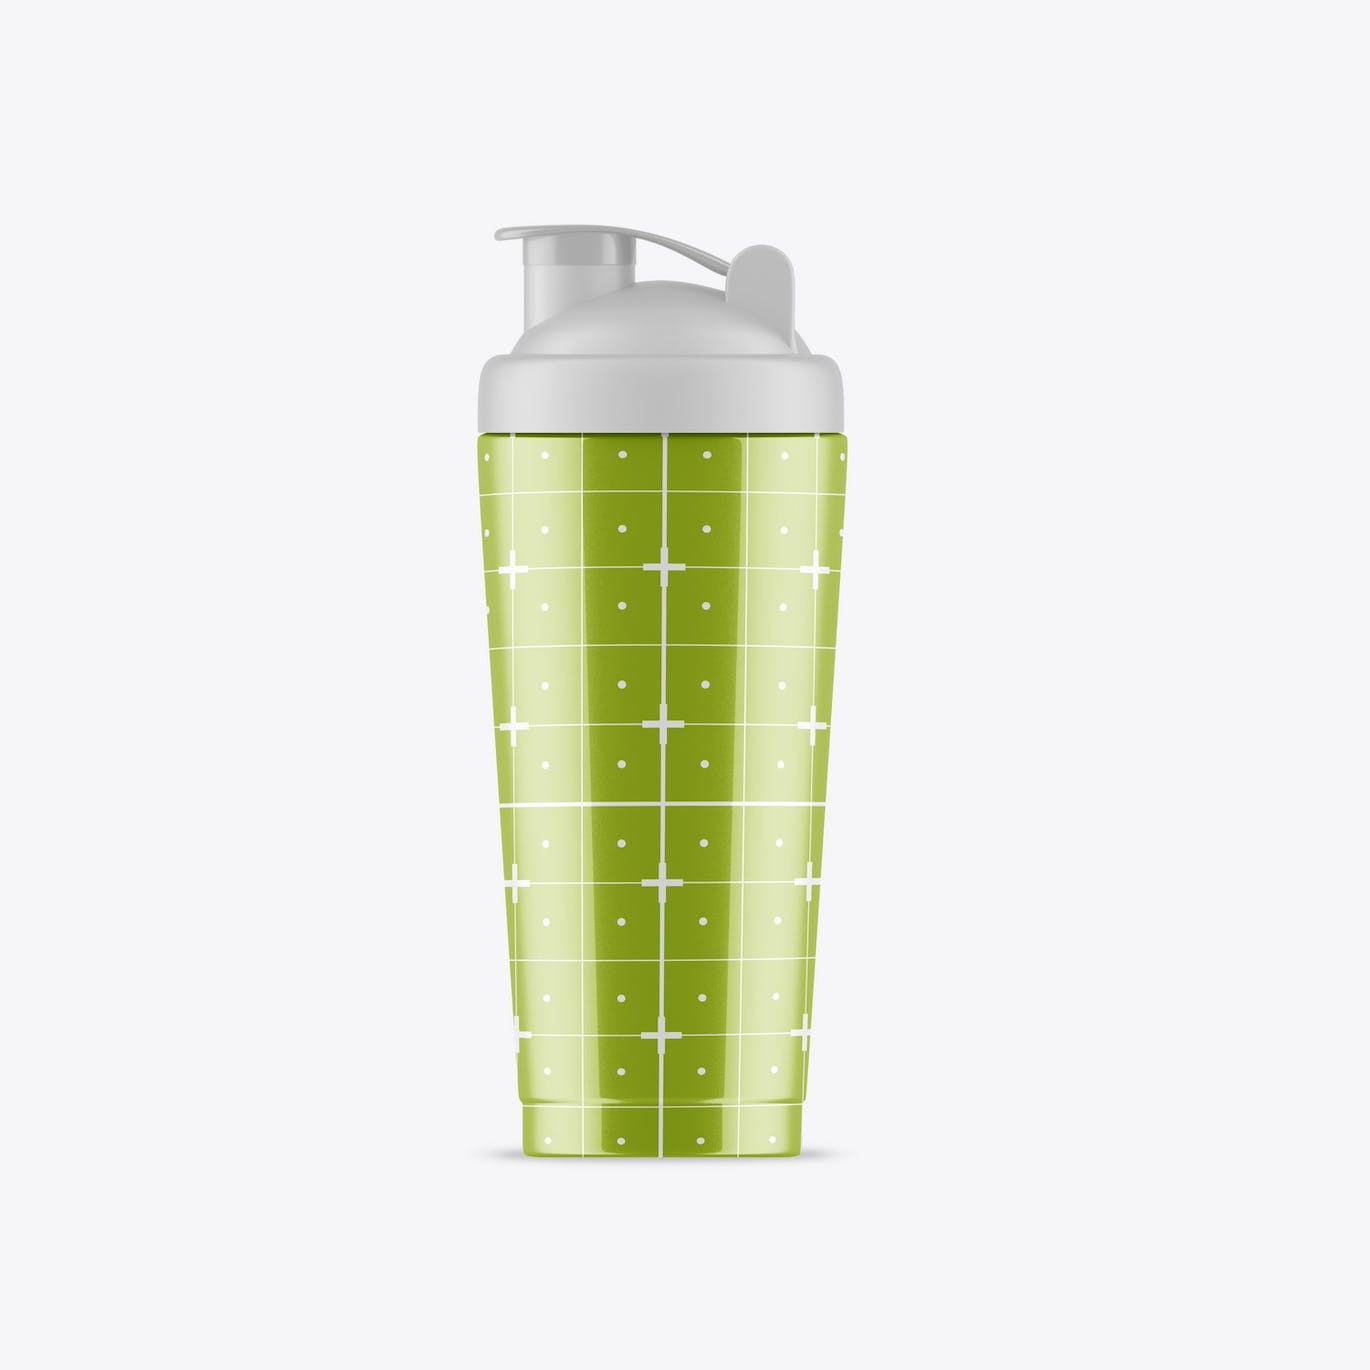 健身房运动水瓶包装设计样机 Gym Bottle Mockup 样机素材 第3张